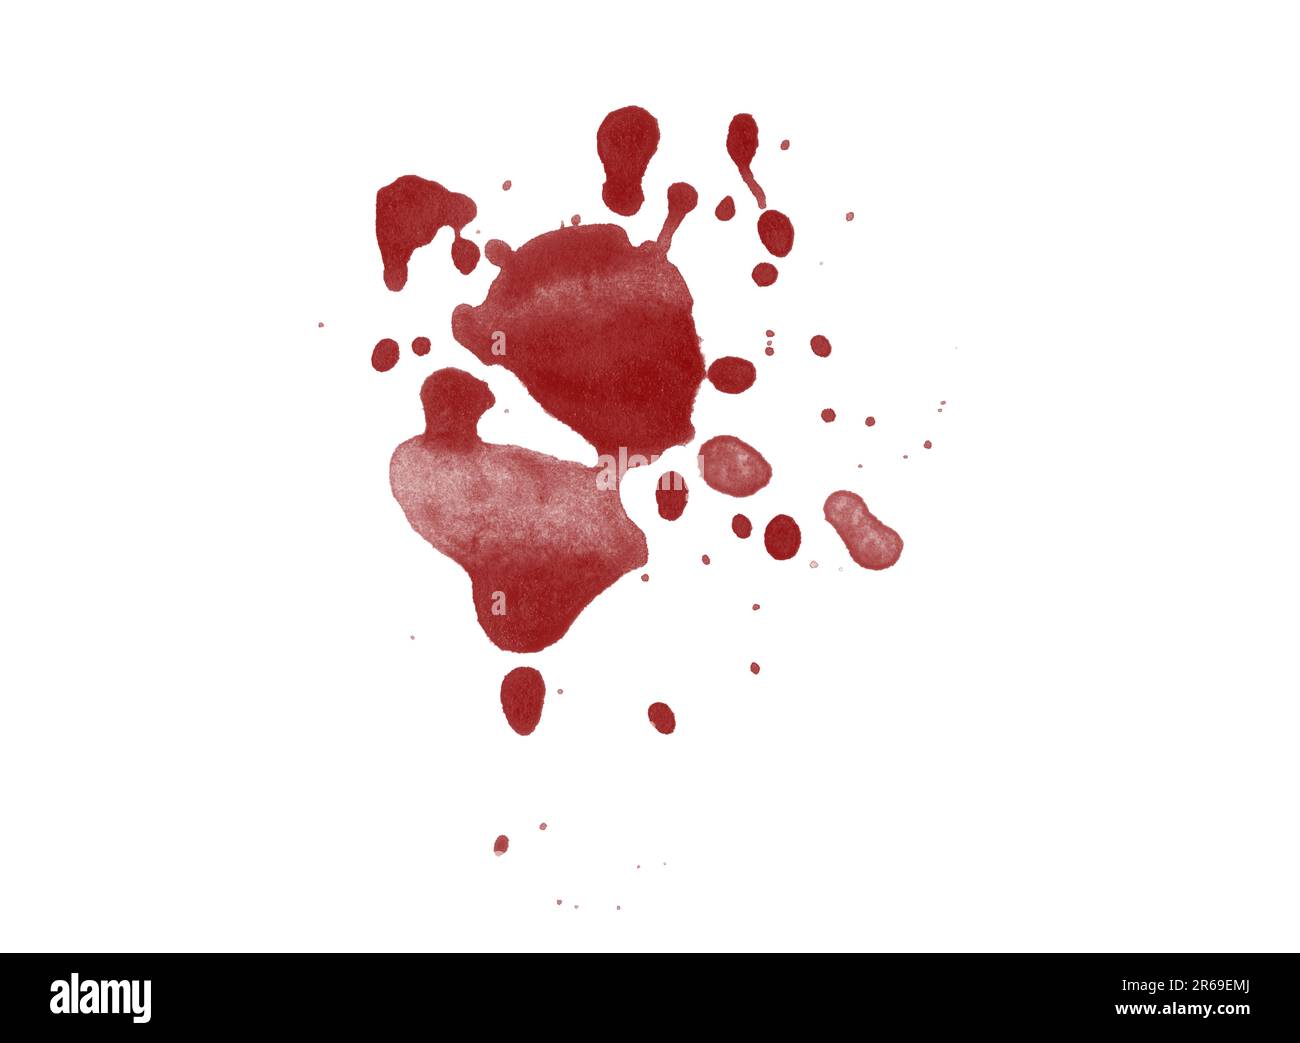 Tache d'éclaboussures de sang rendue numériquement isolée sur fond blanc Banque D'Images